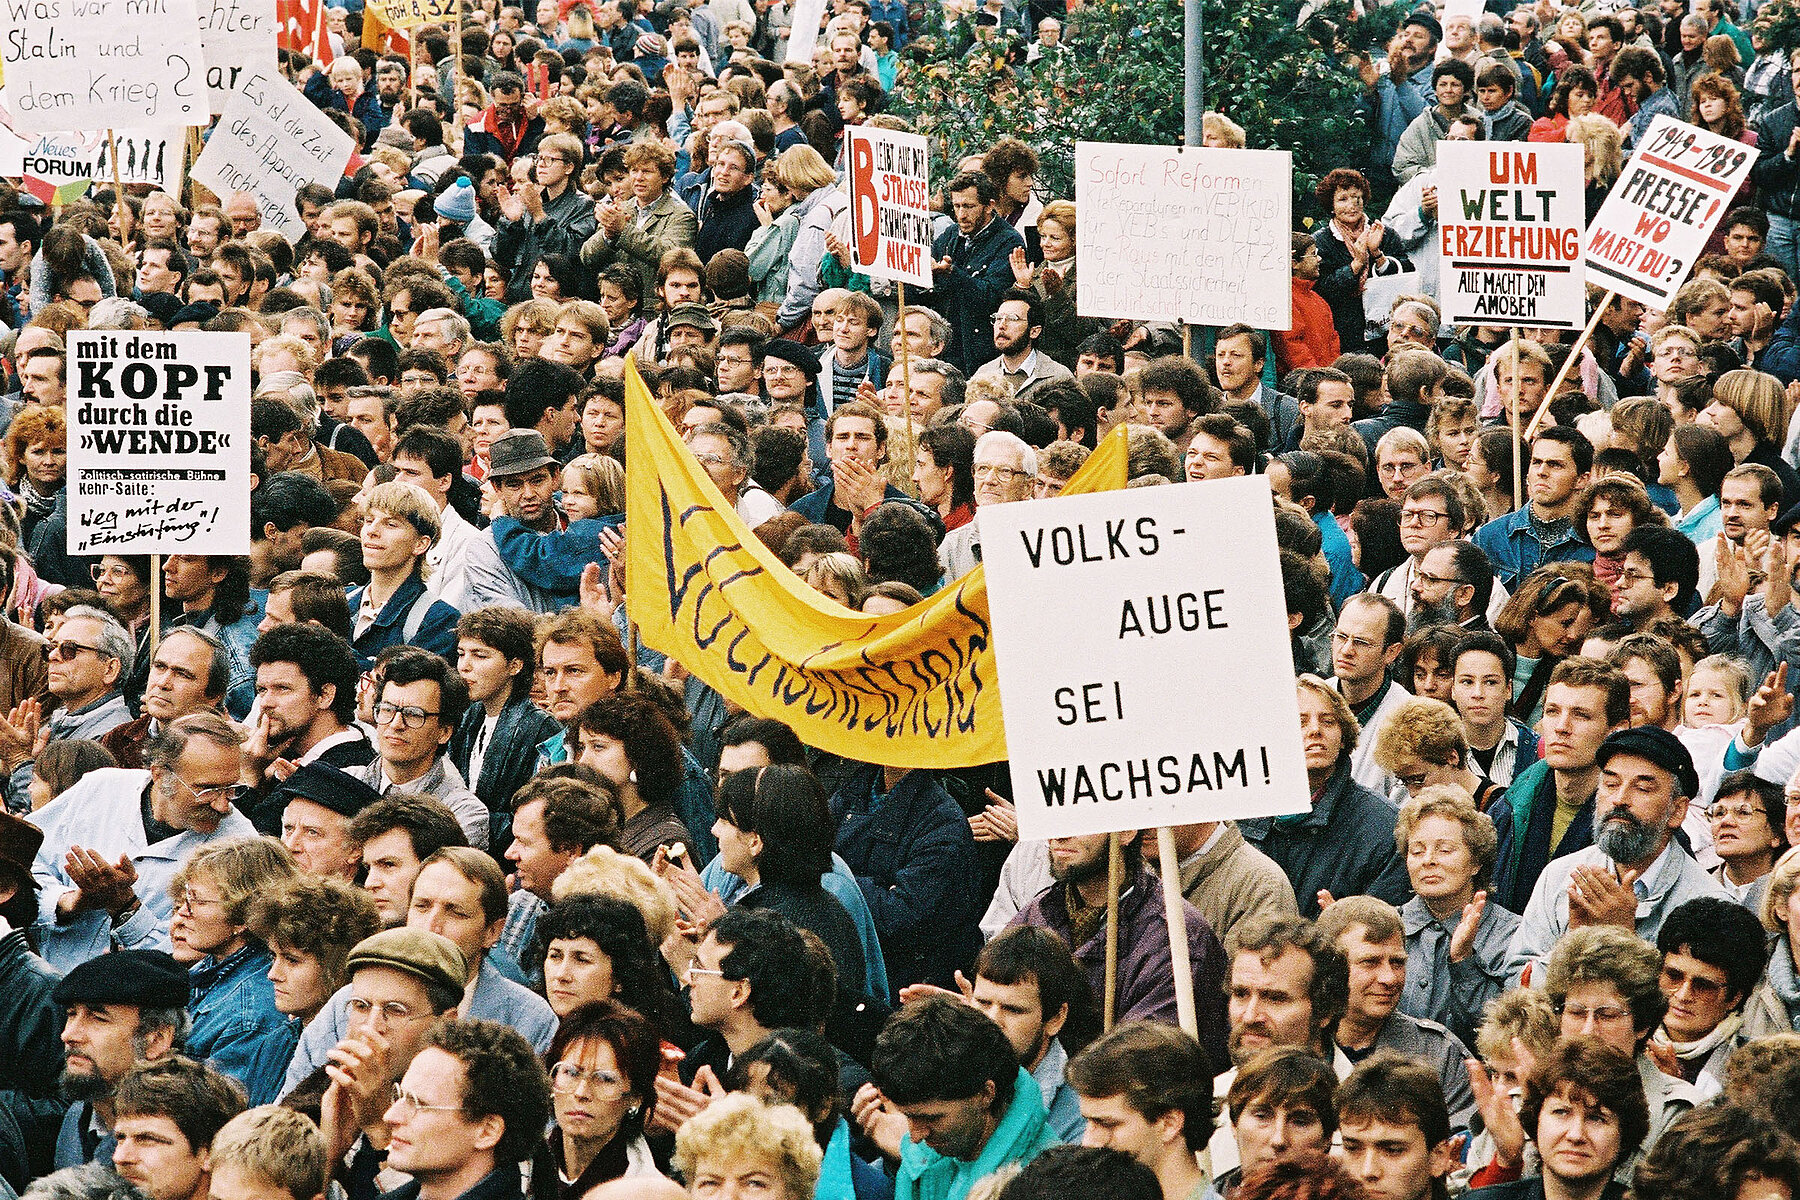 Eine Masse von Demonstrierenden auf dem Alexanderplatz, einige halten Schilder hoch, im Vordergrund befindet sich ein Schild mit der Aufschrift Volksauge sei Wachsam.